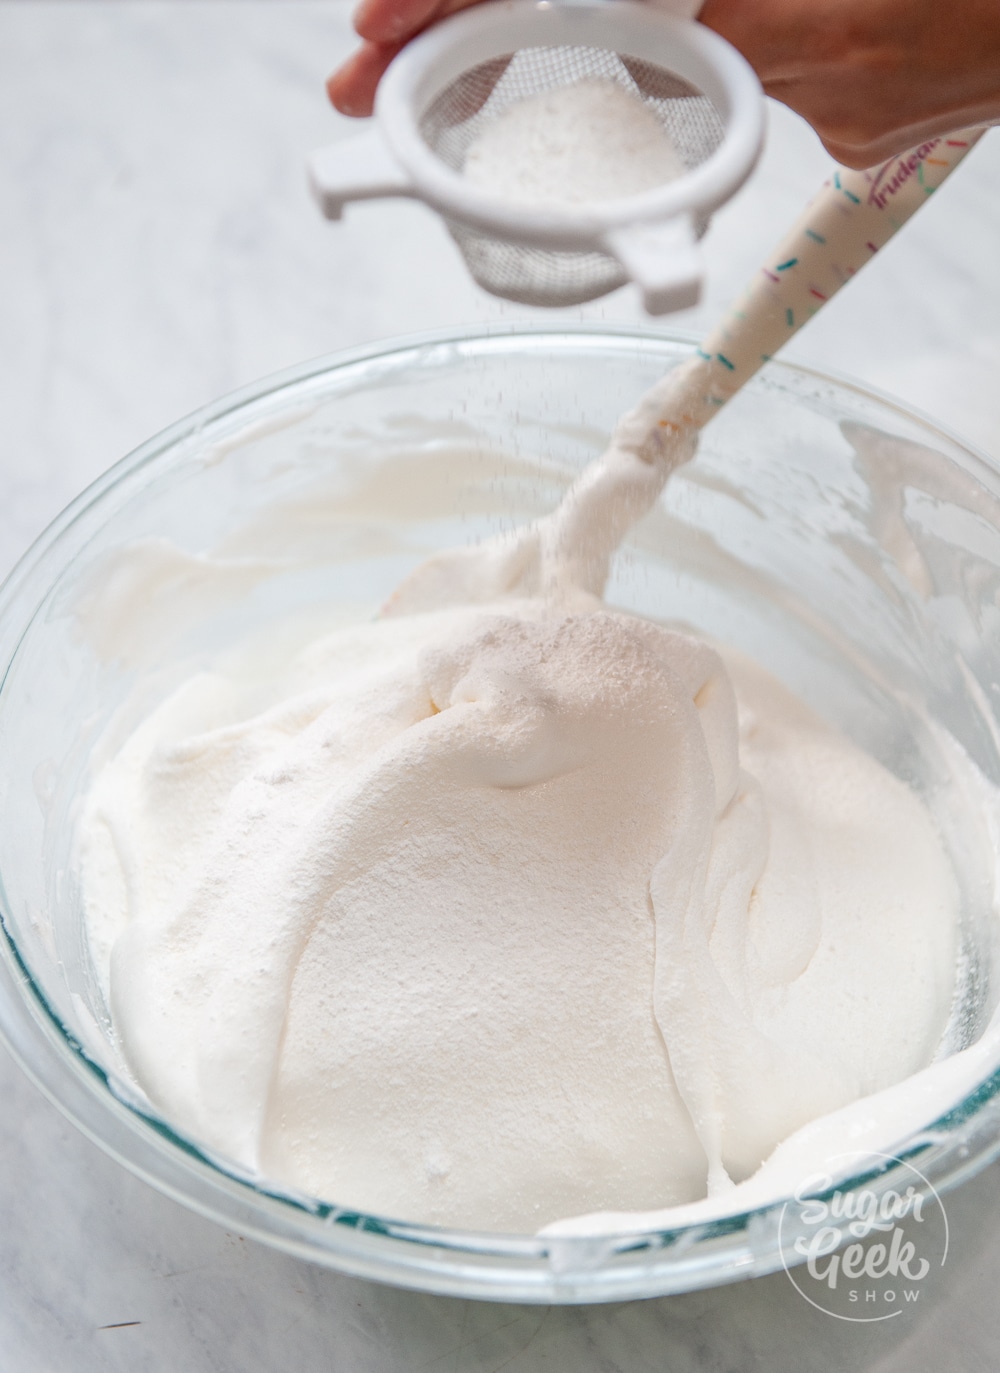 sifting flour into meringue mixture